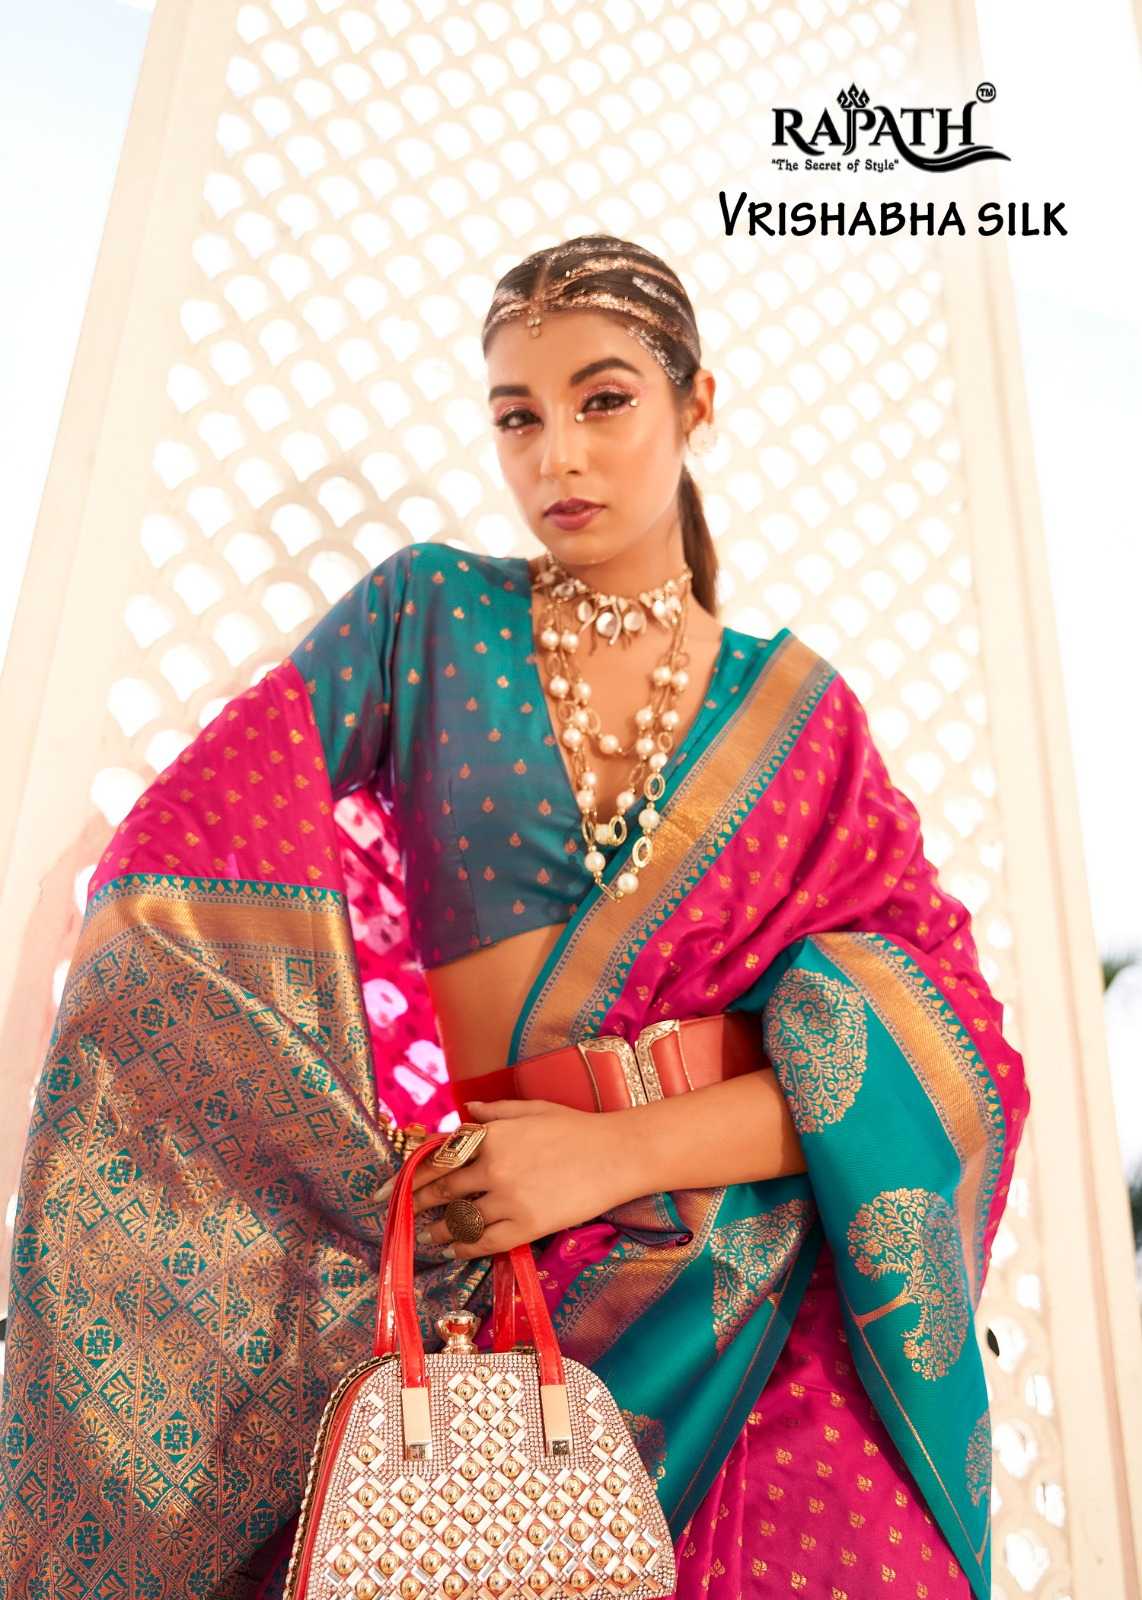 rajpath vrishabha silk soft banarasi wedding wear saree collection 